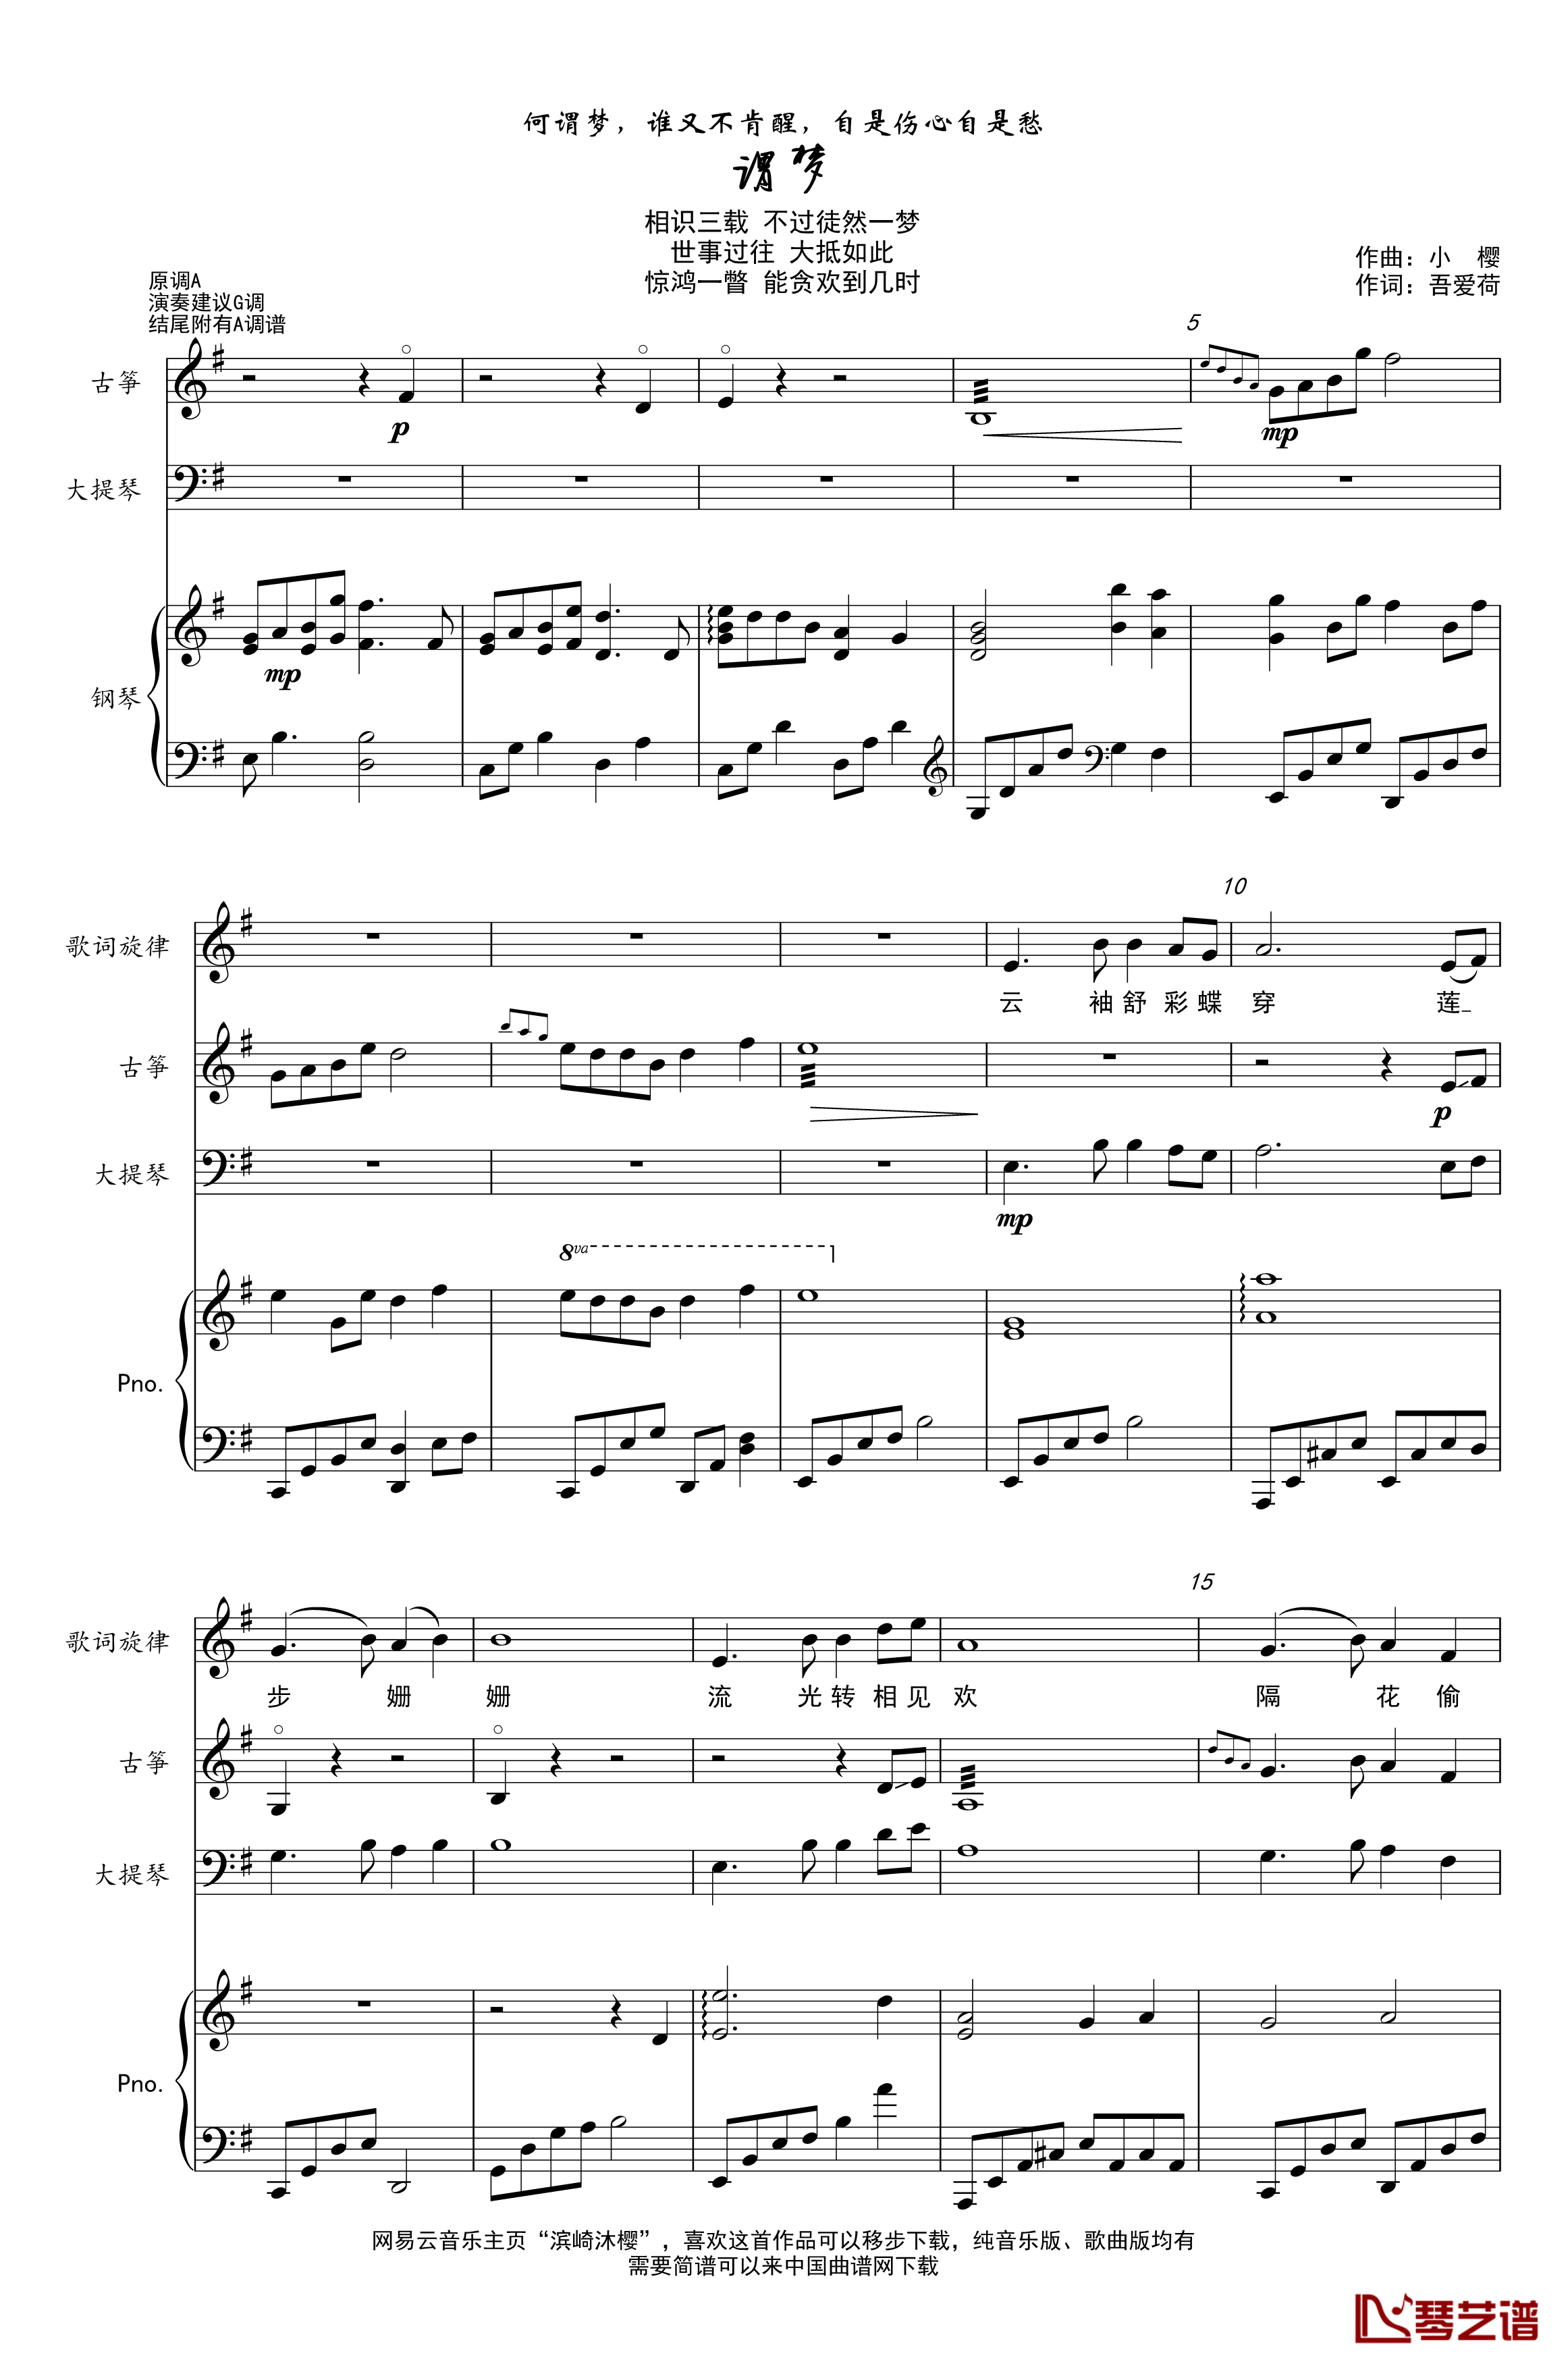 谓梦钢琴谱-古筝&大提琴&钢琴-樱の雪1